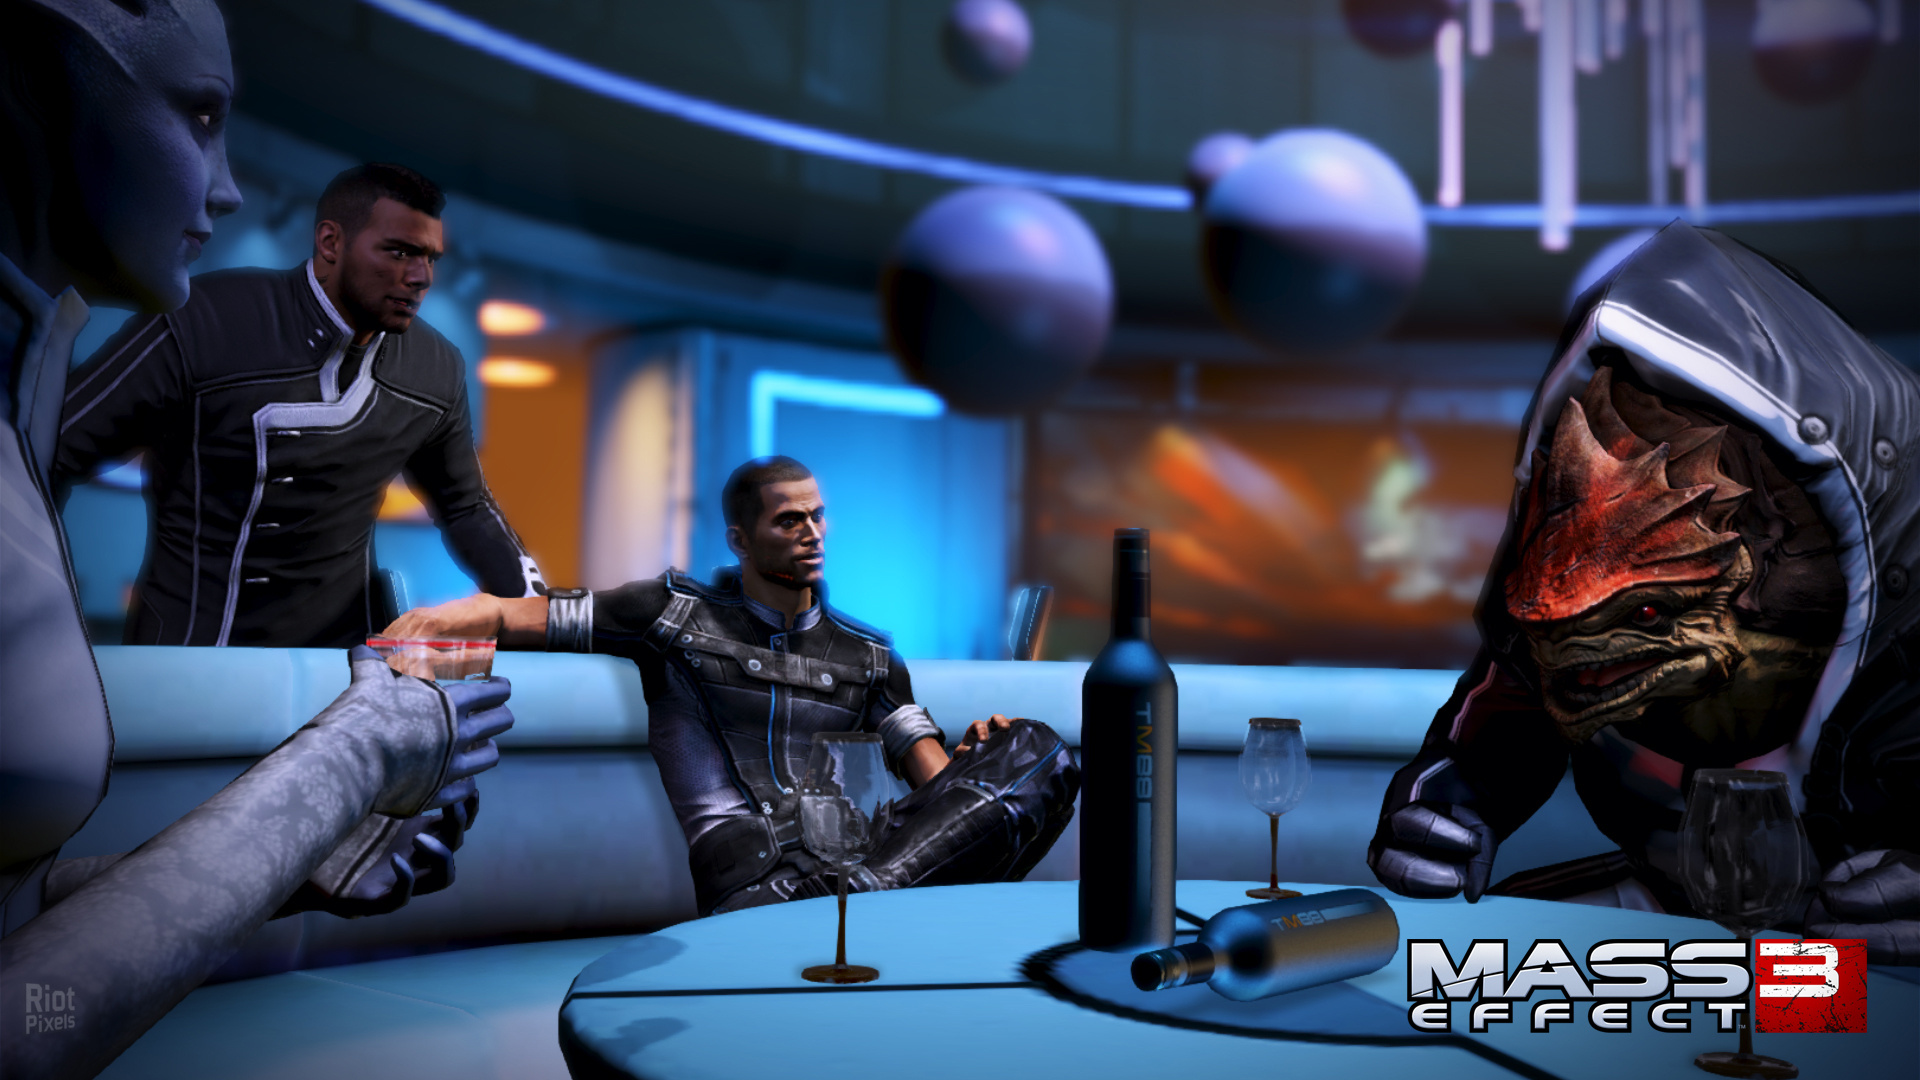 Mass Effect 3: Citadel, Game screenshots, Riot Pixels, 1920x1080 Full HD Desktop